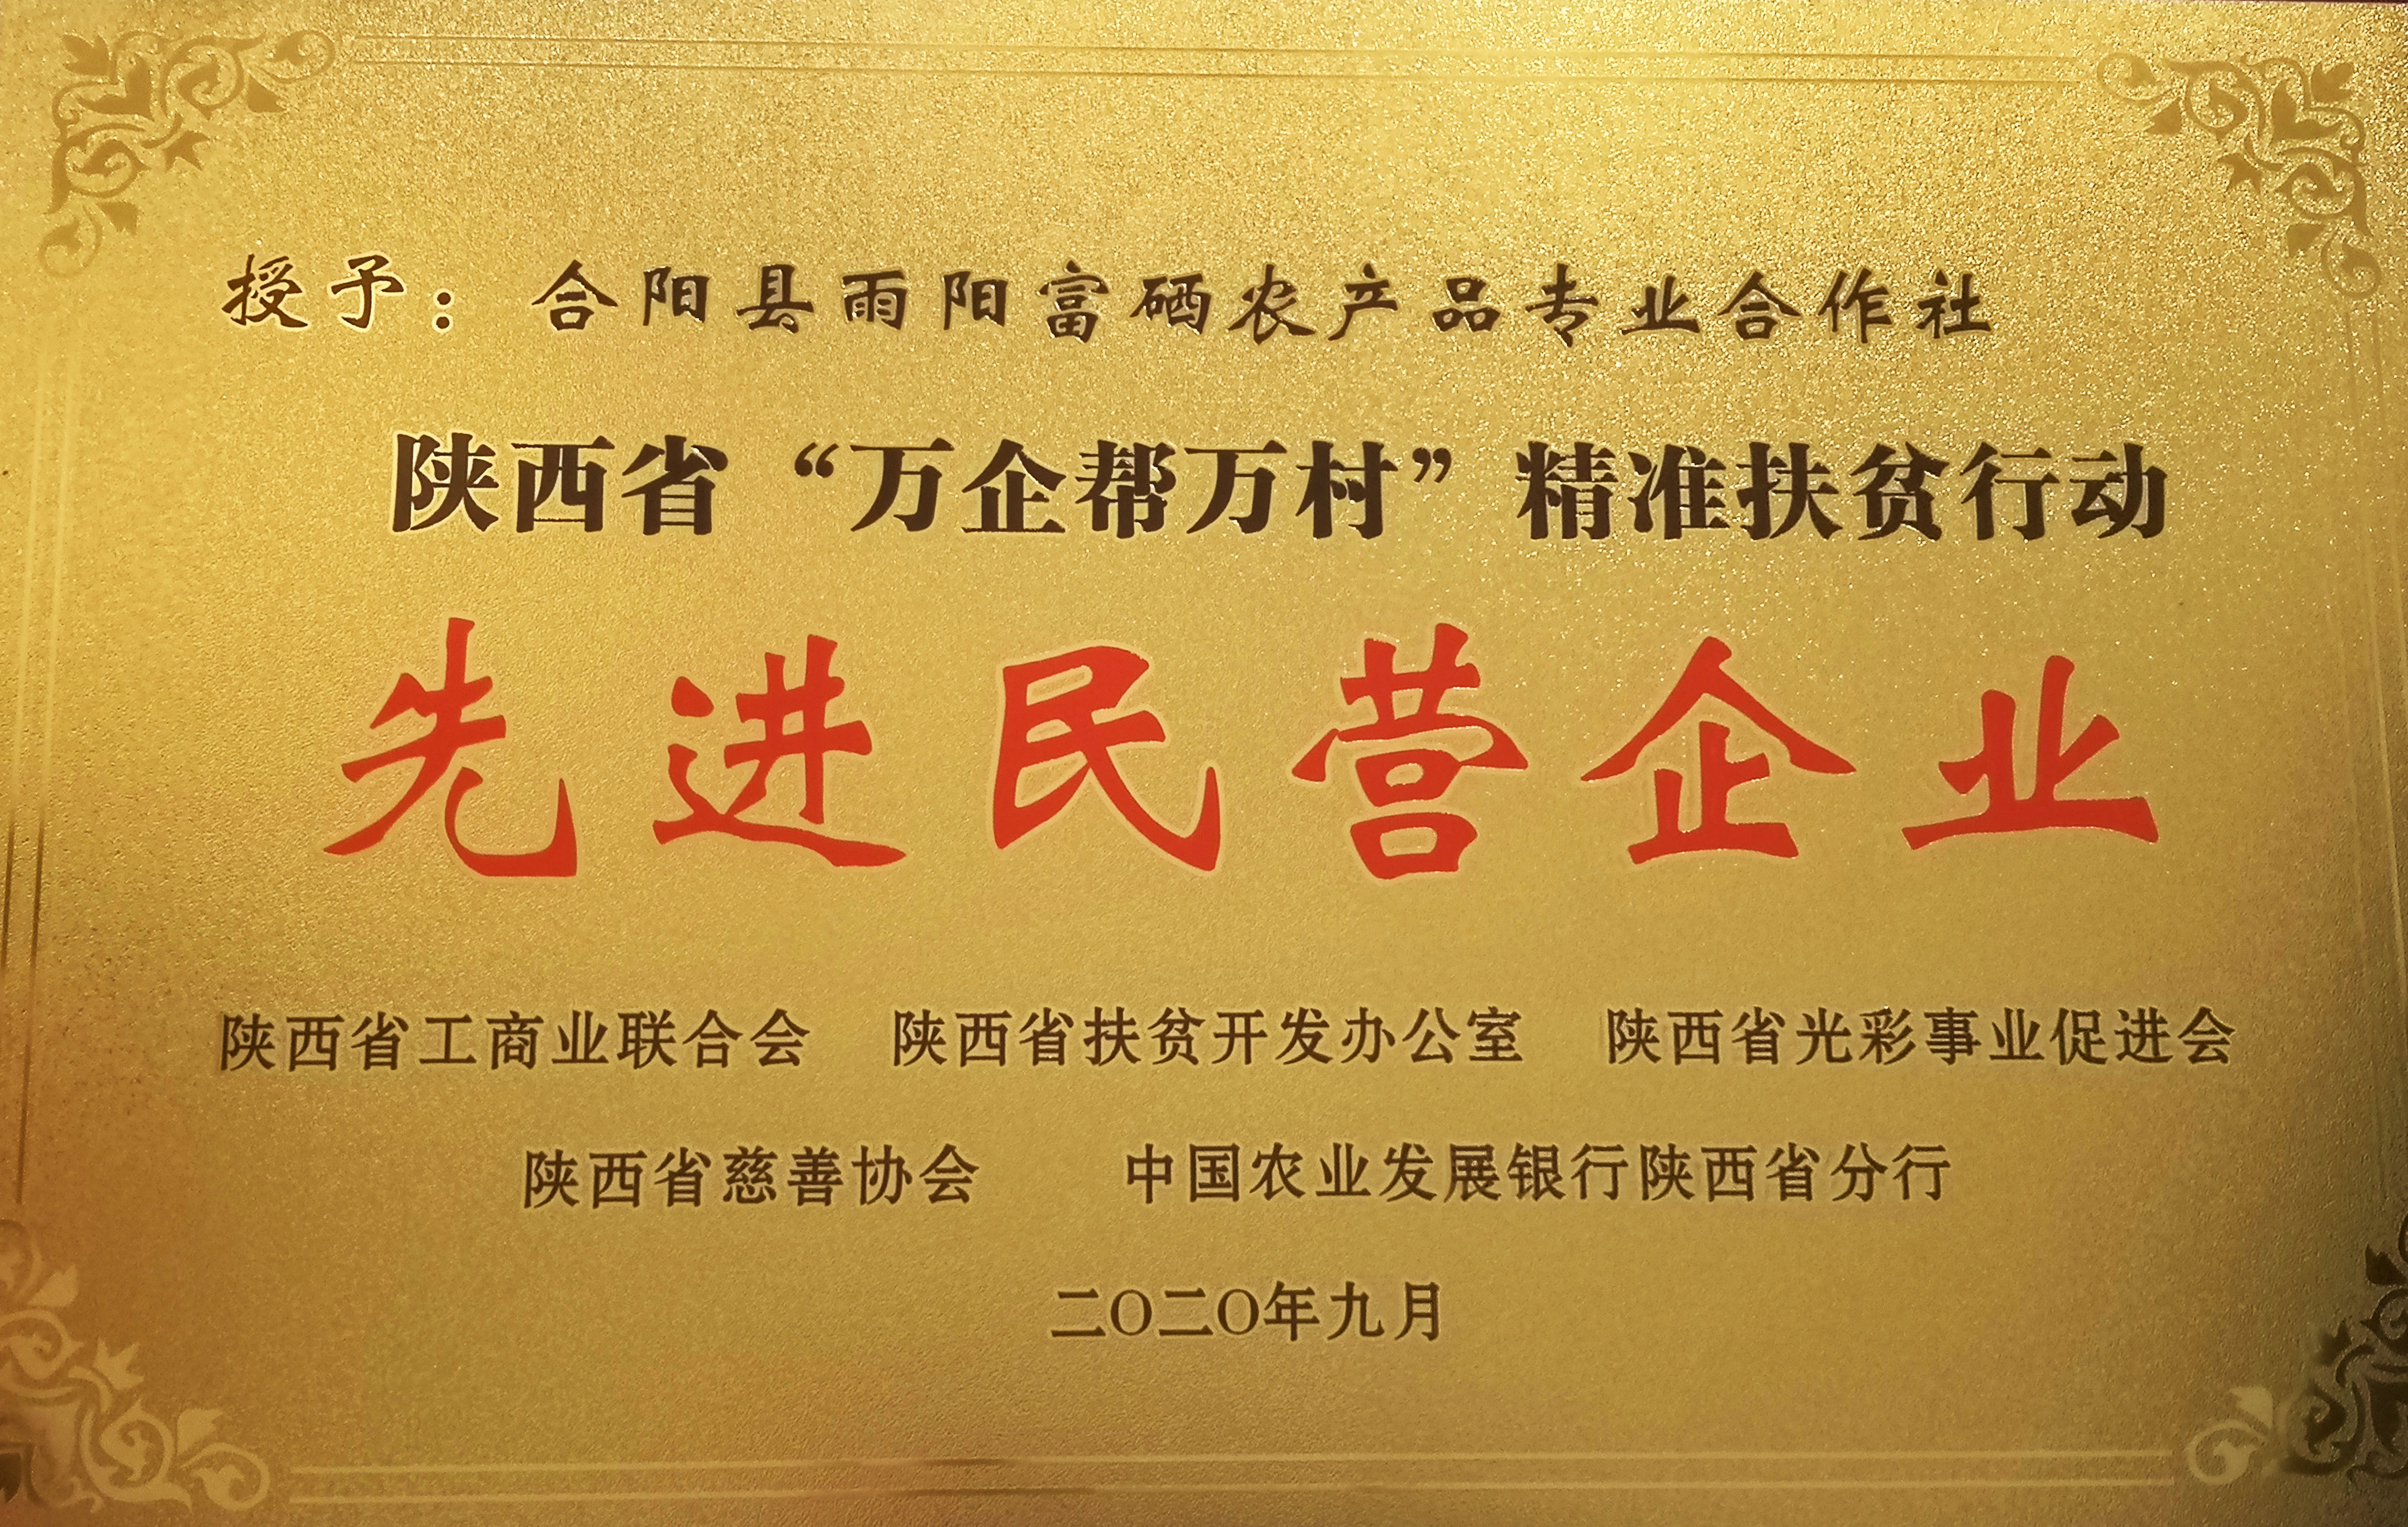 雨阳合作社获得陕西省“万企帮万村”先进民营企业荣誉